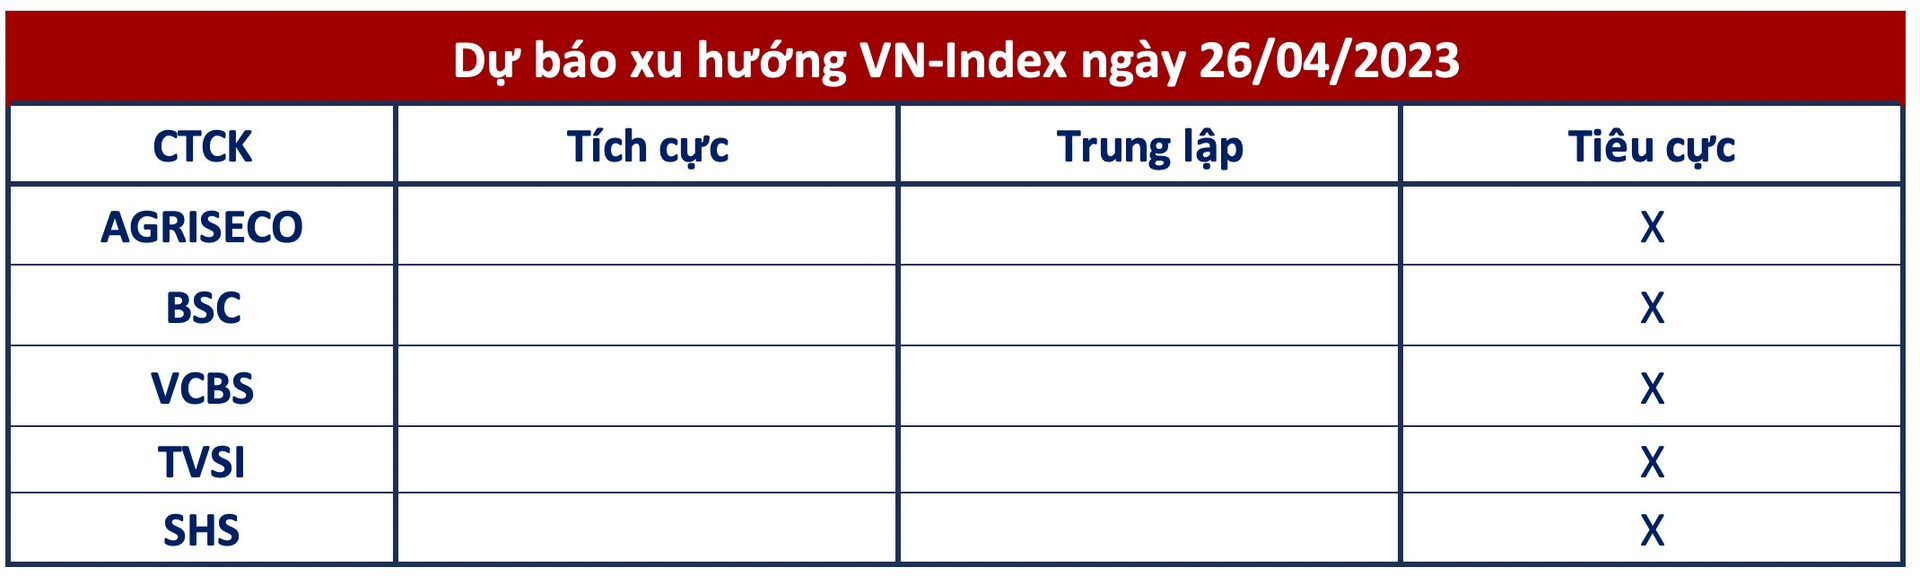 Góc nhìn CTCK: Áp lực nghỉ lễ đang đến gần, VN-Index có thể tiếp tục xu hướng điều chỉnh - Ảnh 1.